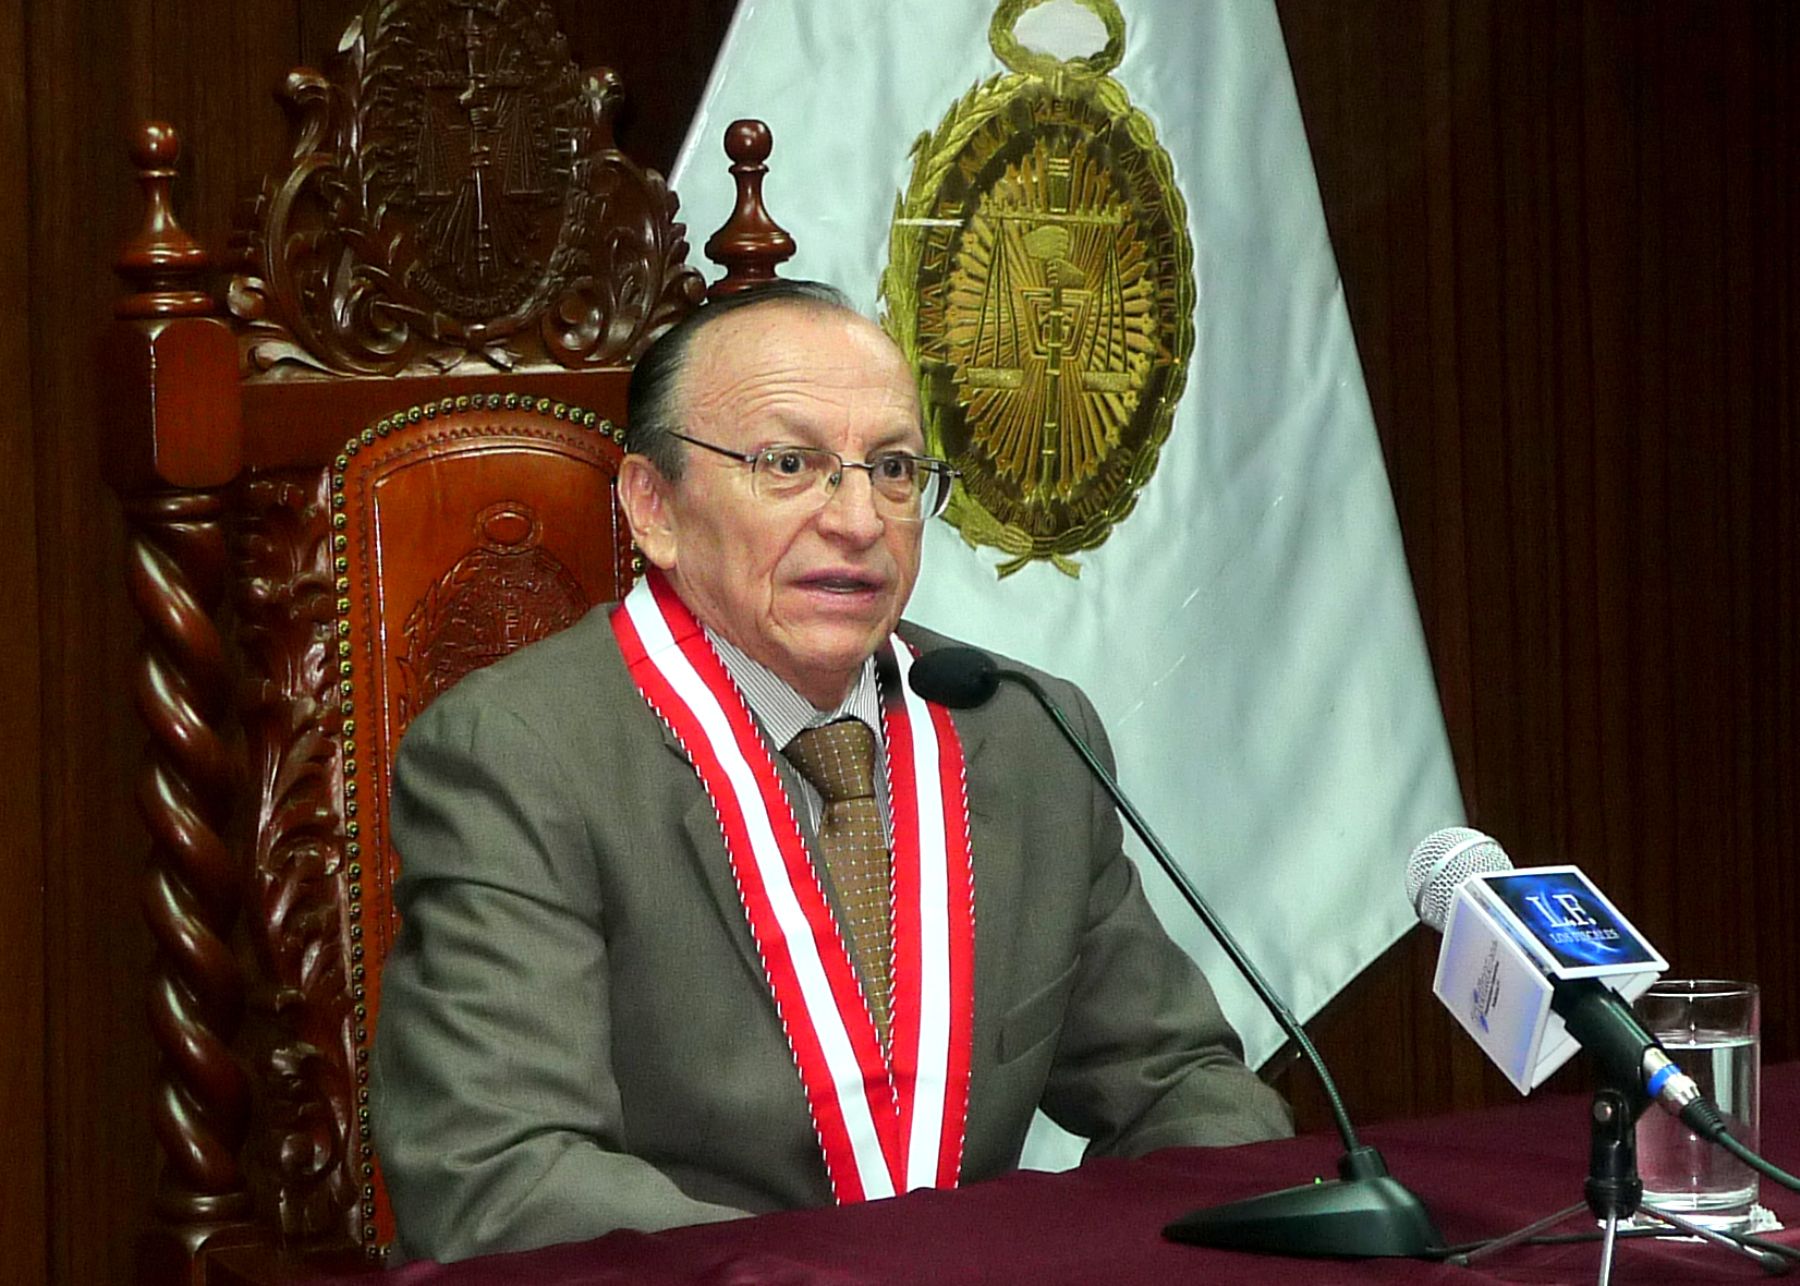 José Antonio Peláez Bardales nuevo fiscal de la Nación para el periodo 2011-2014, en reemplazo de Gladys Echaiz.Foto: ANDINA/Luis Incháustegui.